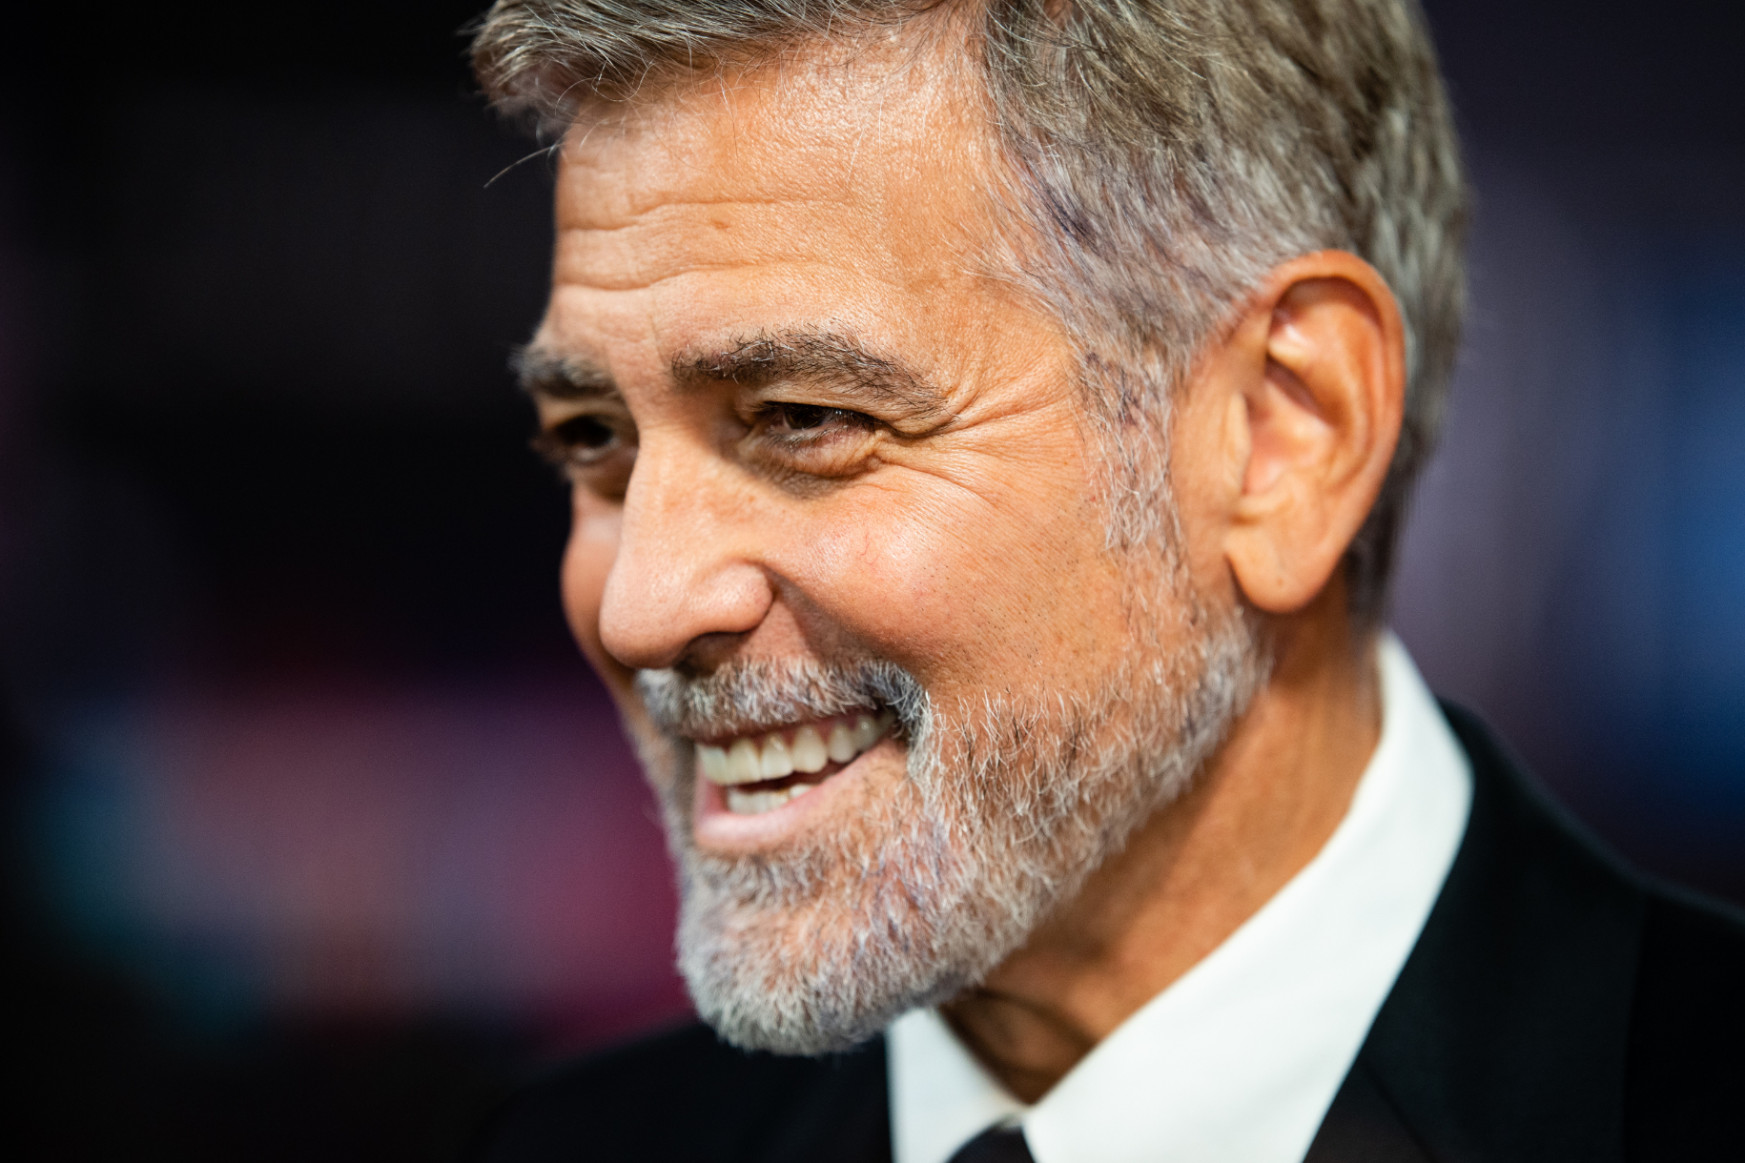 George Clooney egynapi munkával kereshetett volna 35 millió dollárt, de nemet mondott rá